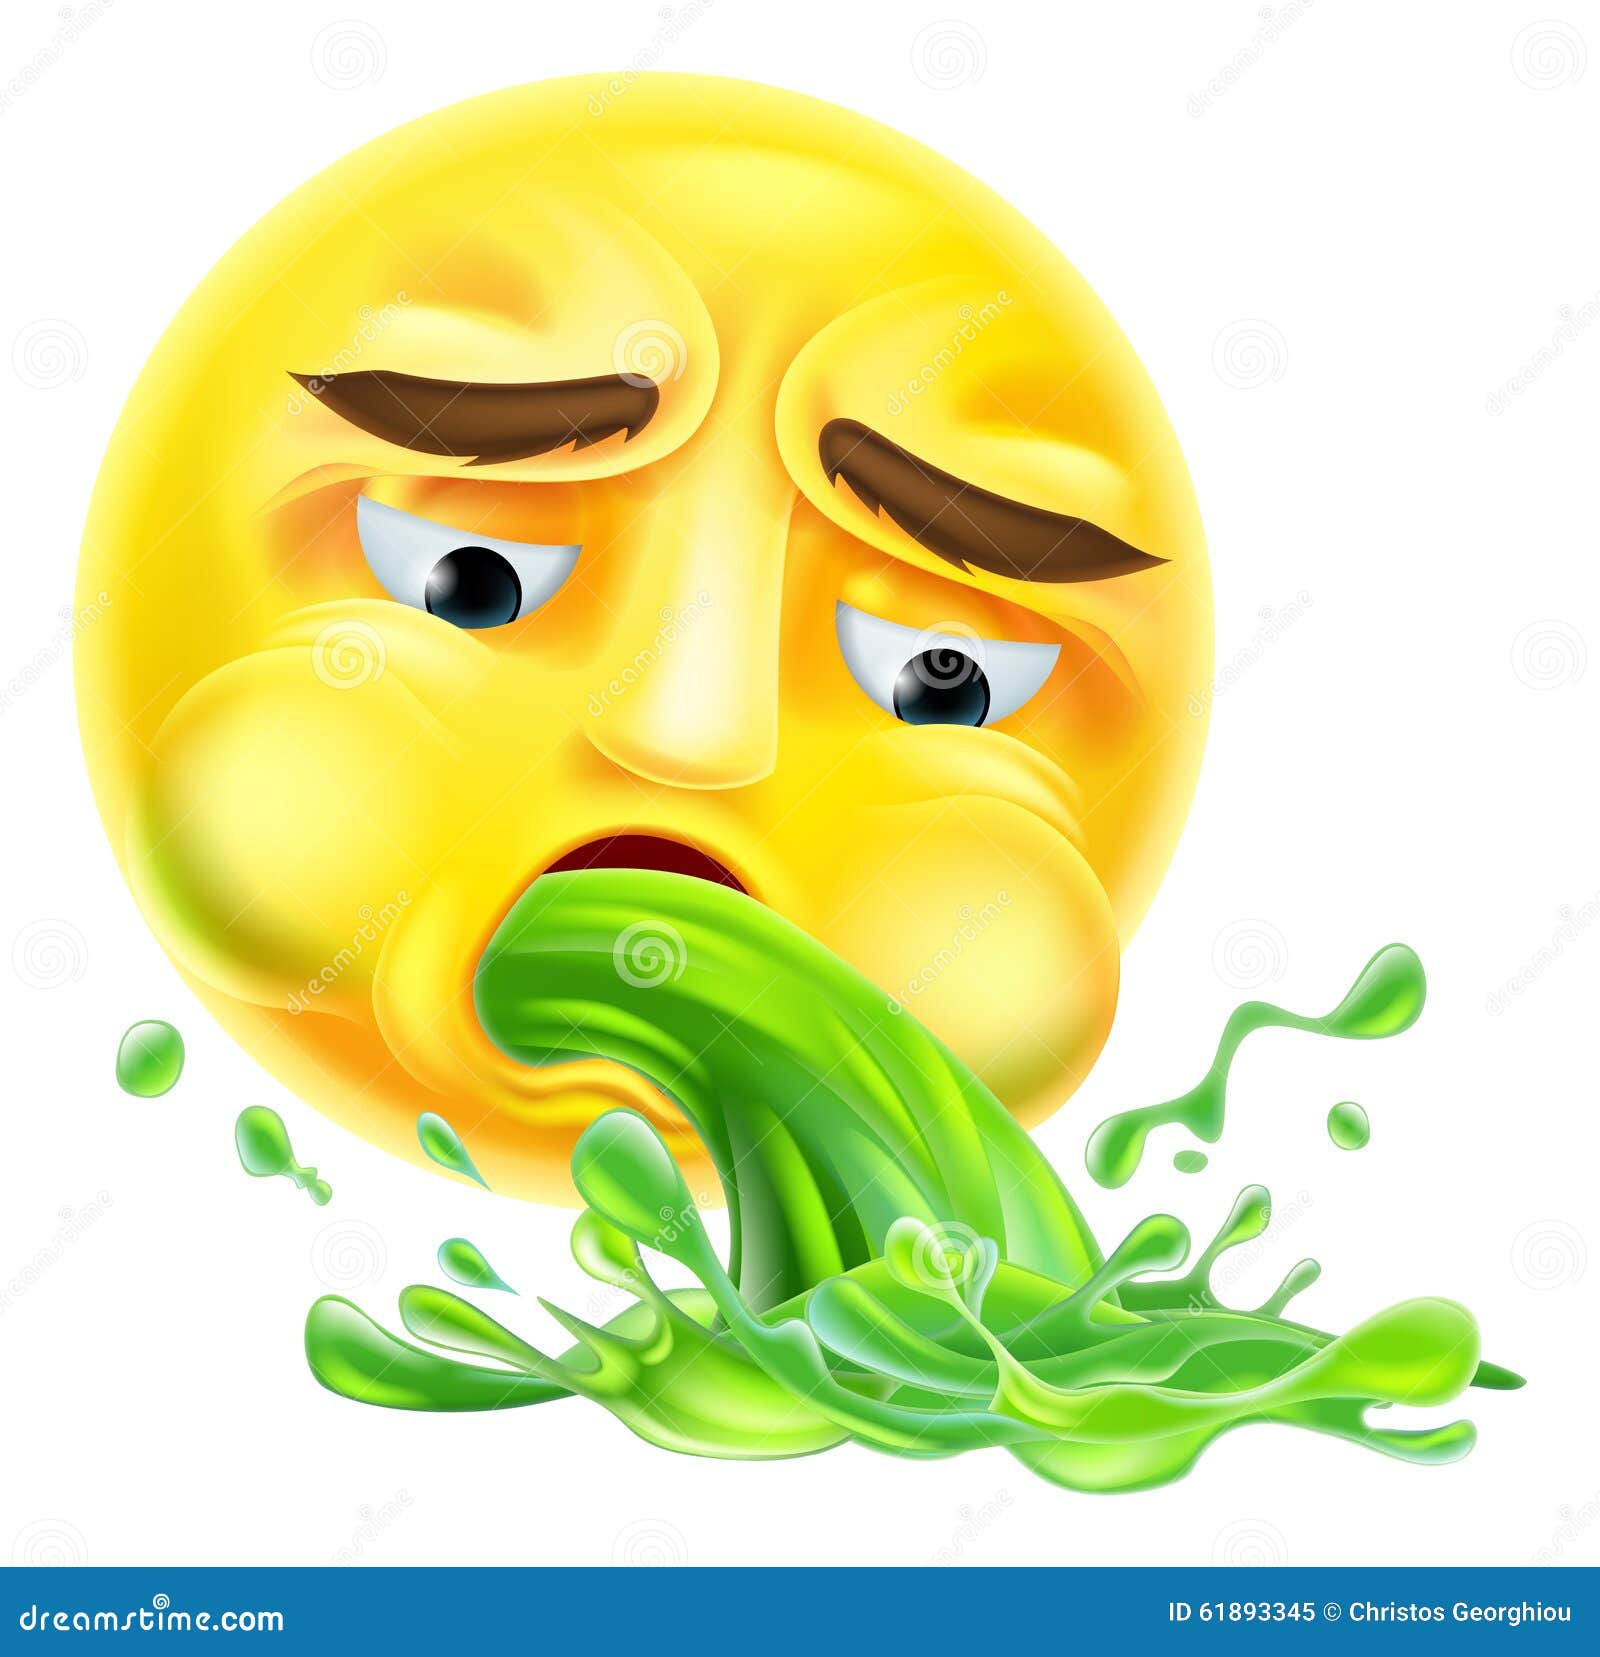 Resultado de imagem para emojis de vomito